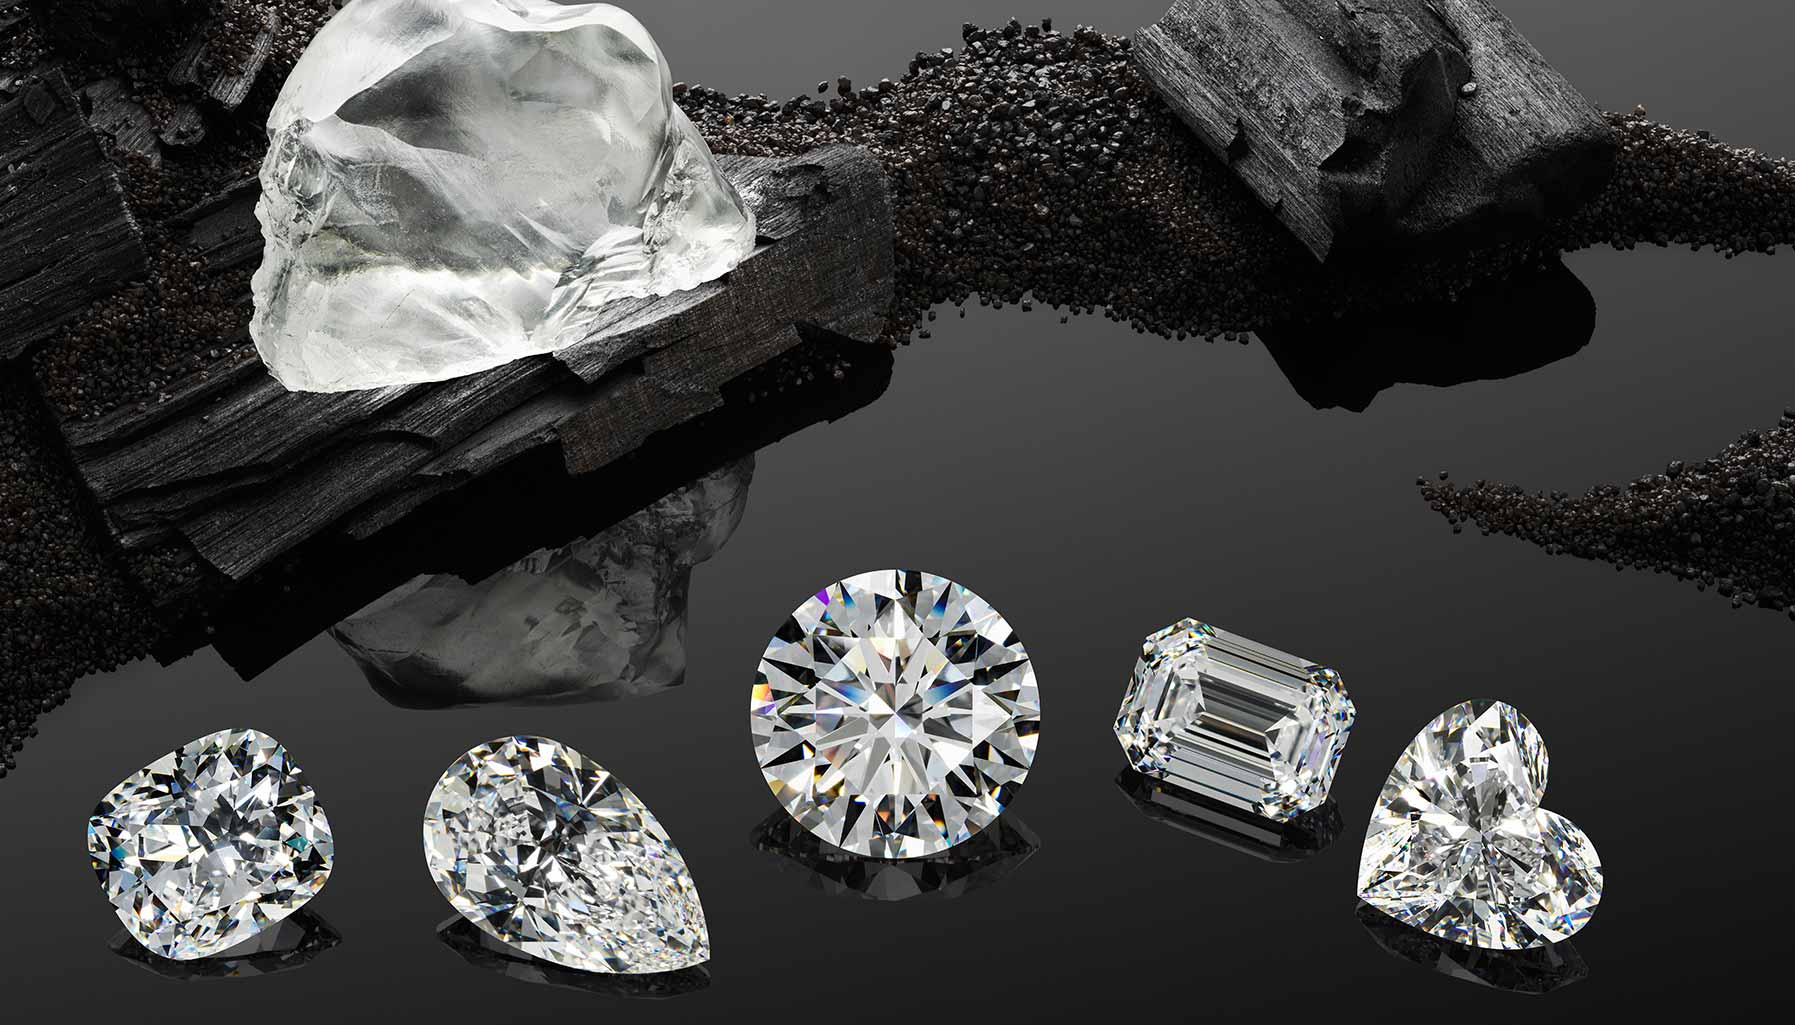 Сет алмаза. Королева Калахари Алмаз. Дорогие ювелирные украшения. Ювелирные изделия с природными алмазами.